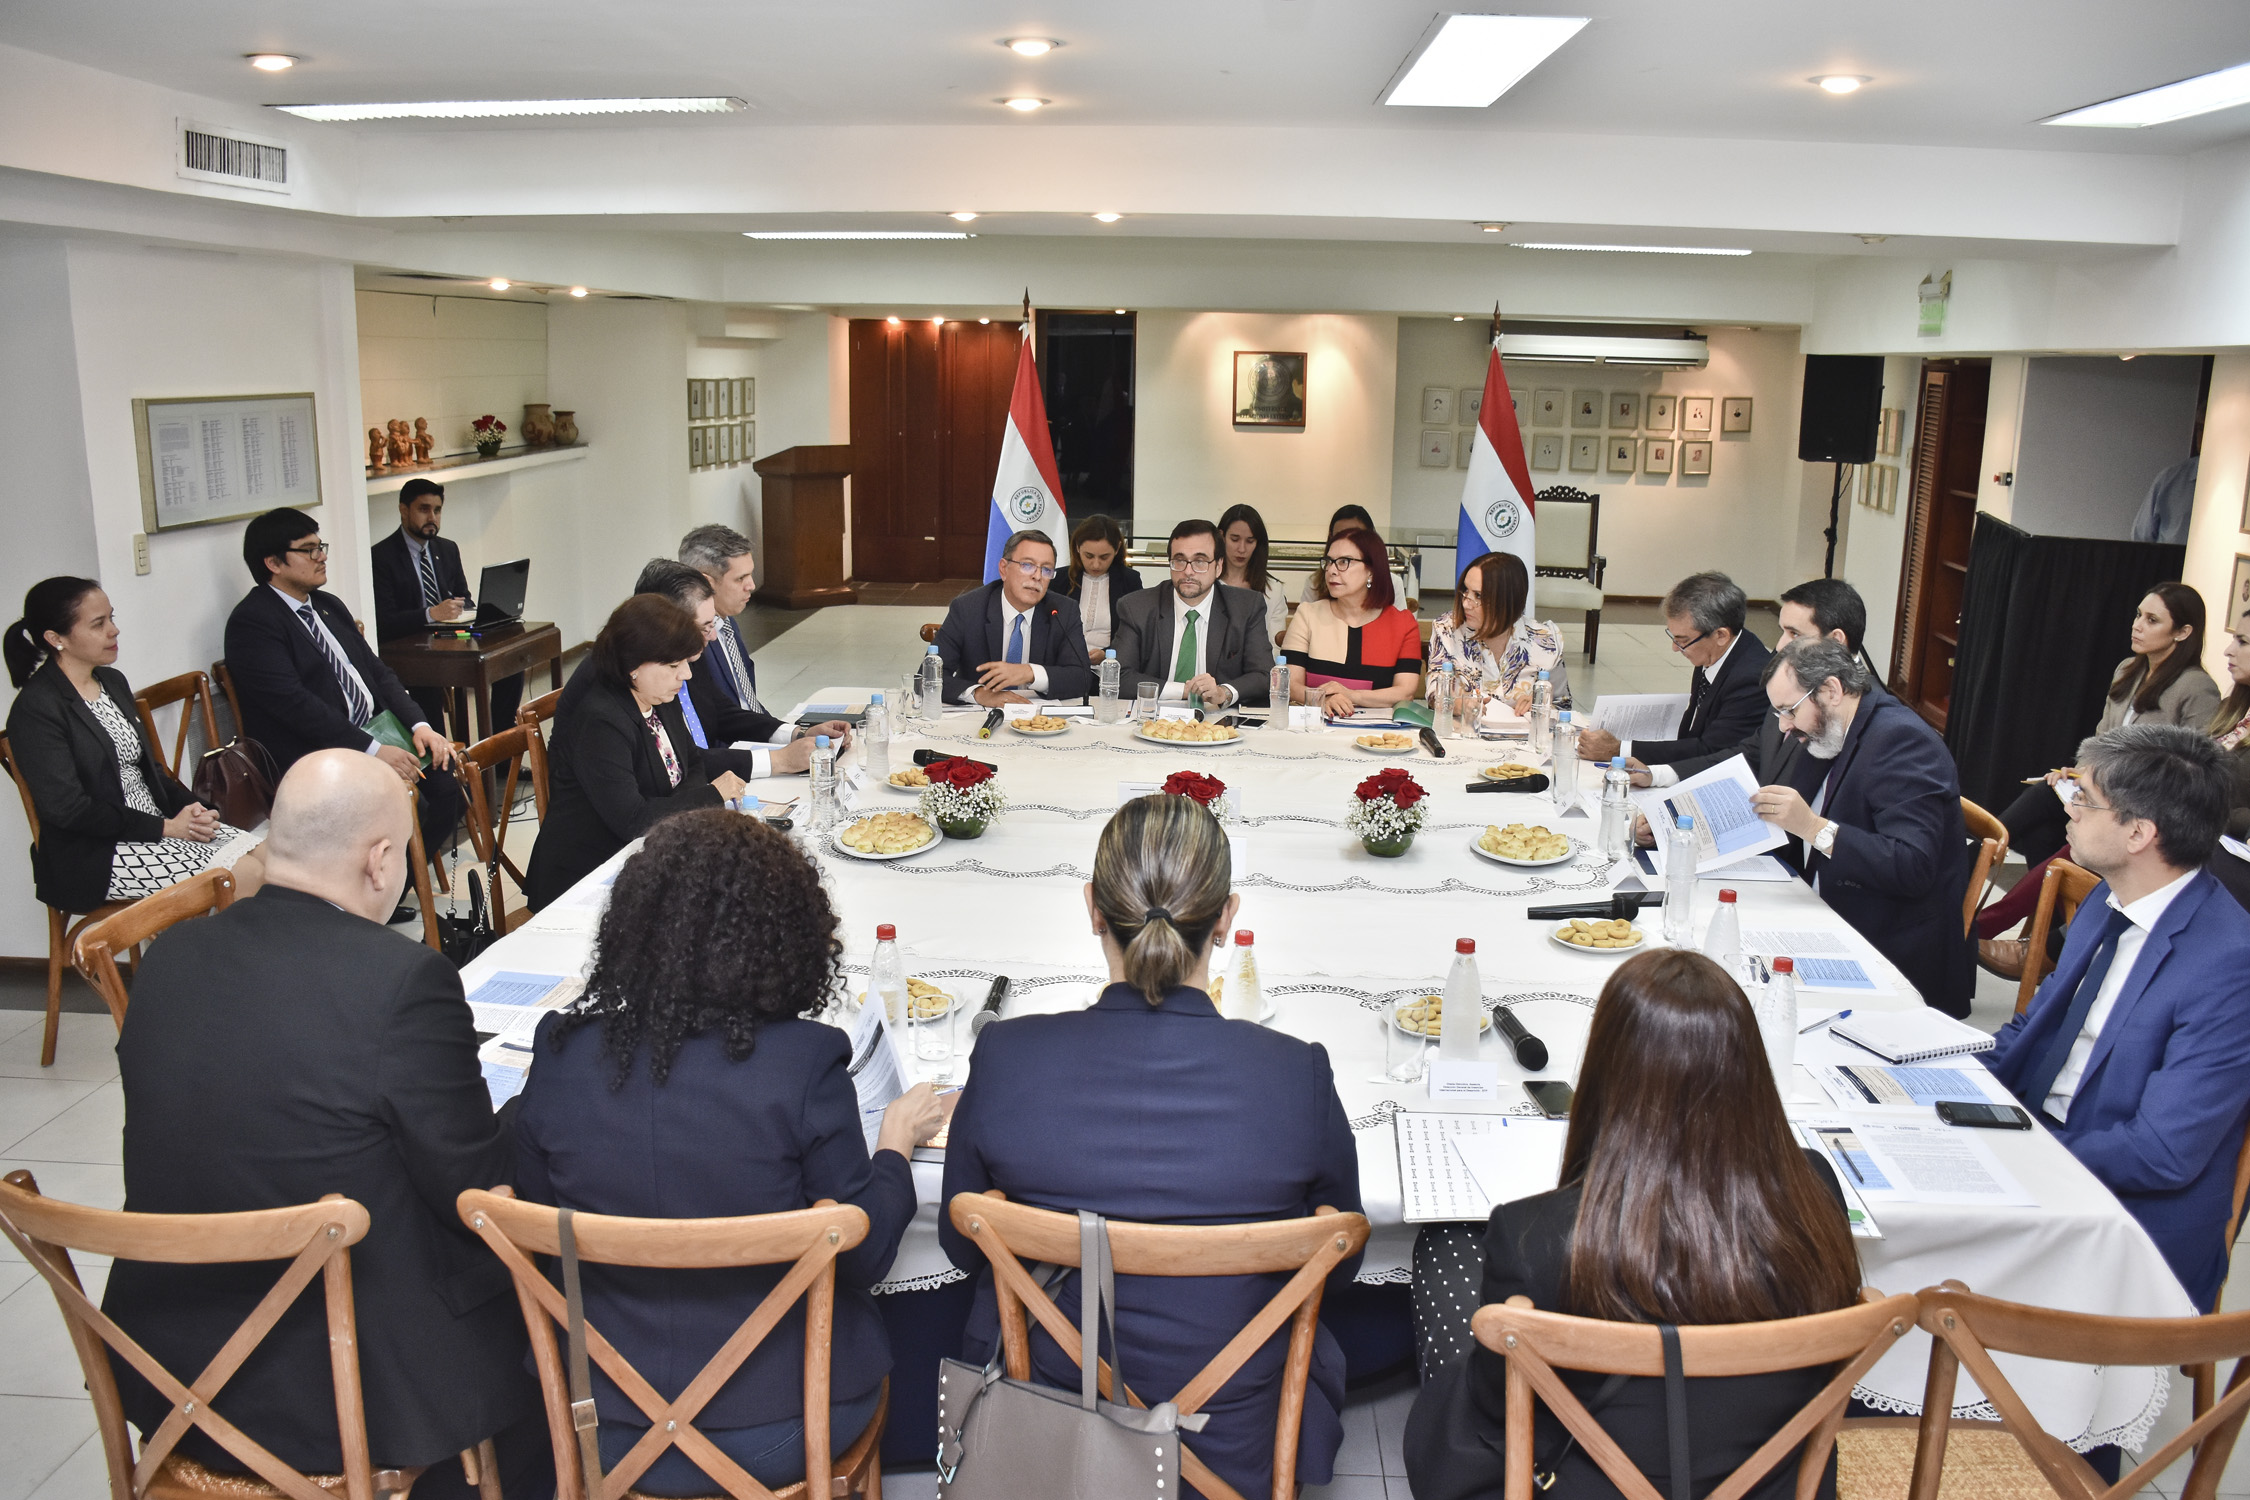 Quedó instalada la Comisión Multisectorial para coordinar acciones e iniciativas del Paraguay en su relacionamiento con la OCDE